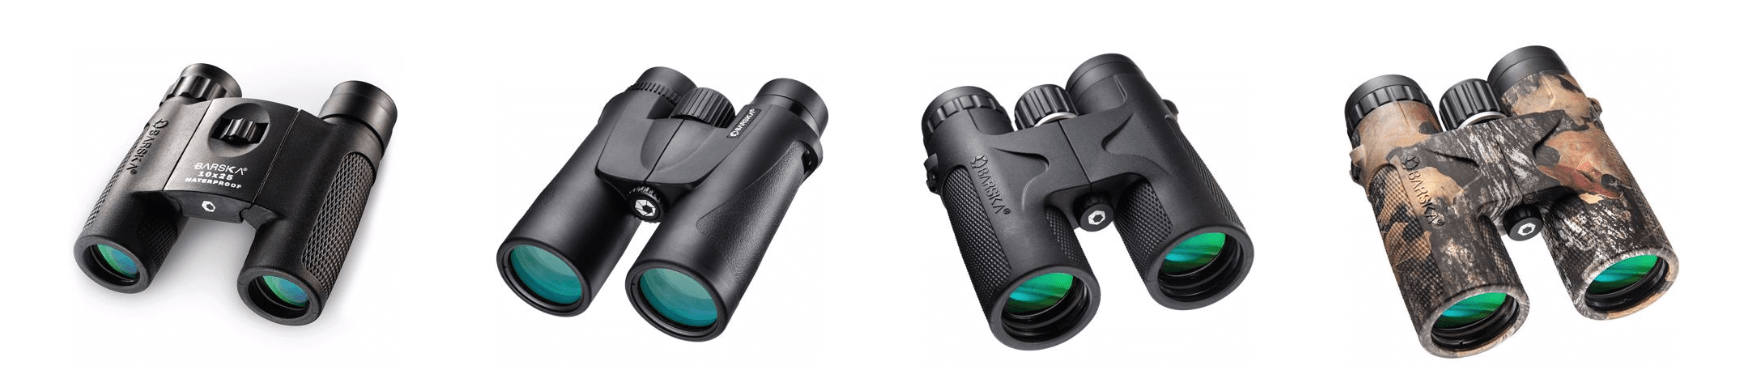 selection-of-barska-binoculars